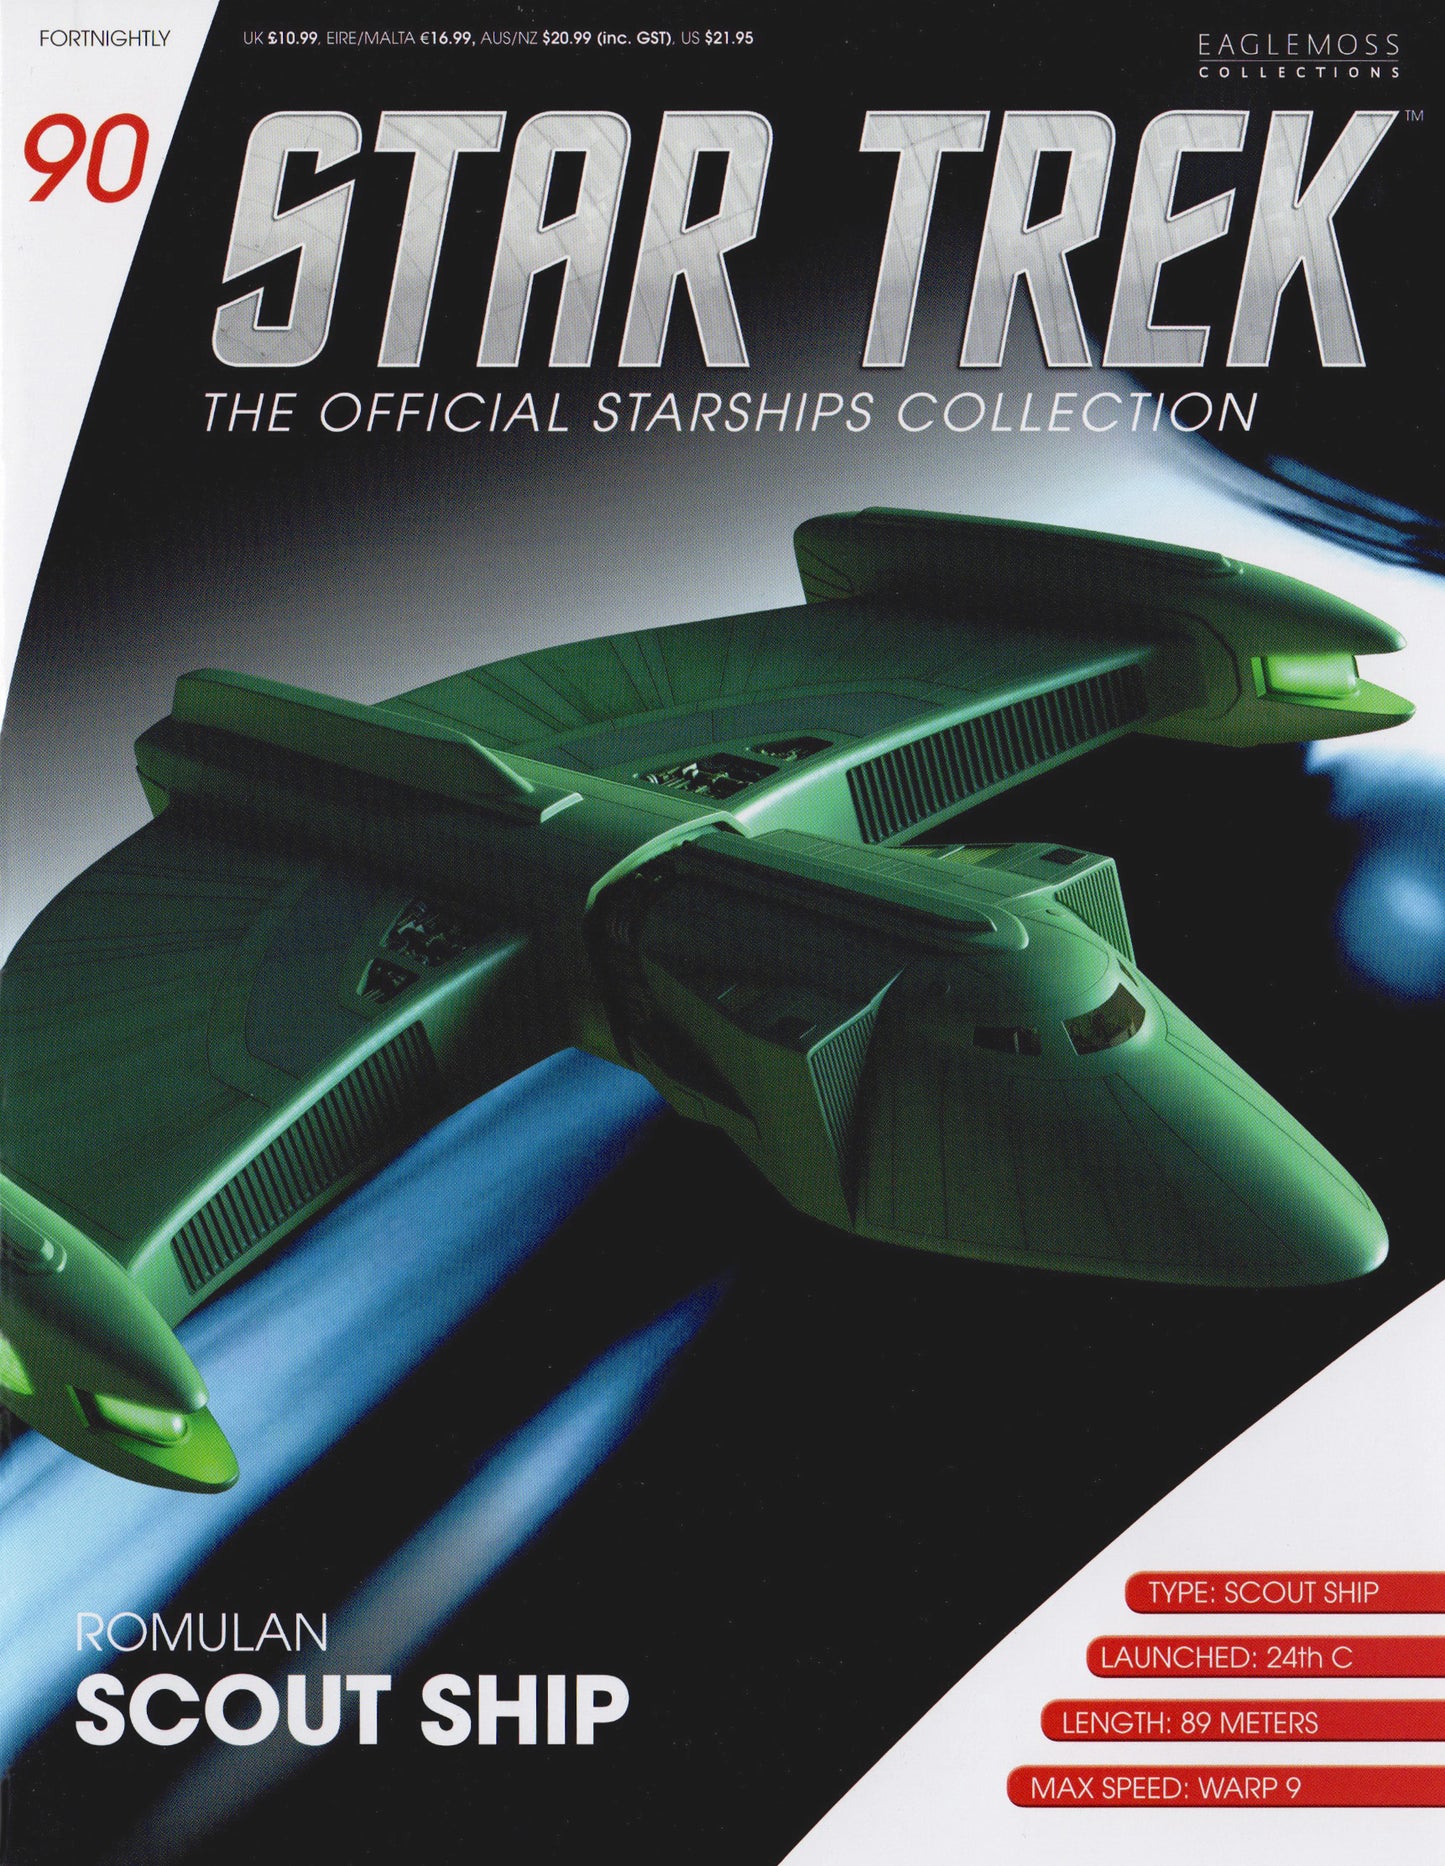 Modèle moulé sous pression Eaglemoss STAR TREK Romulan Scout (numéro 90)